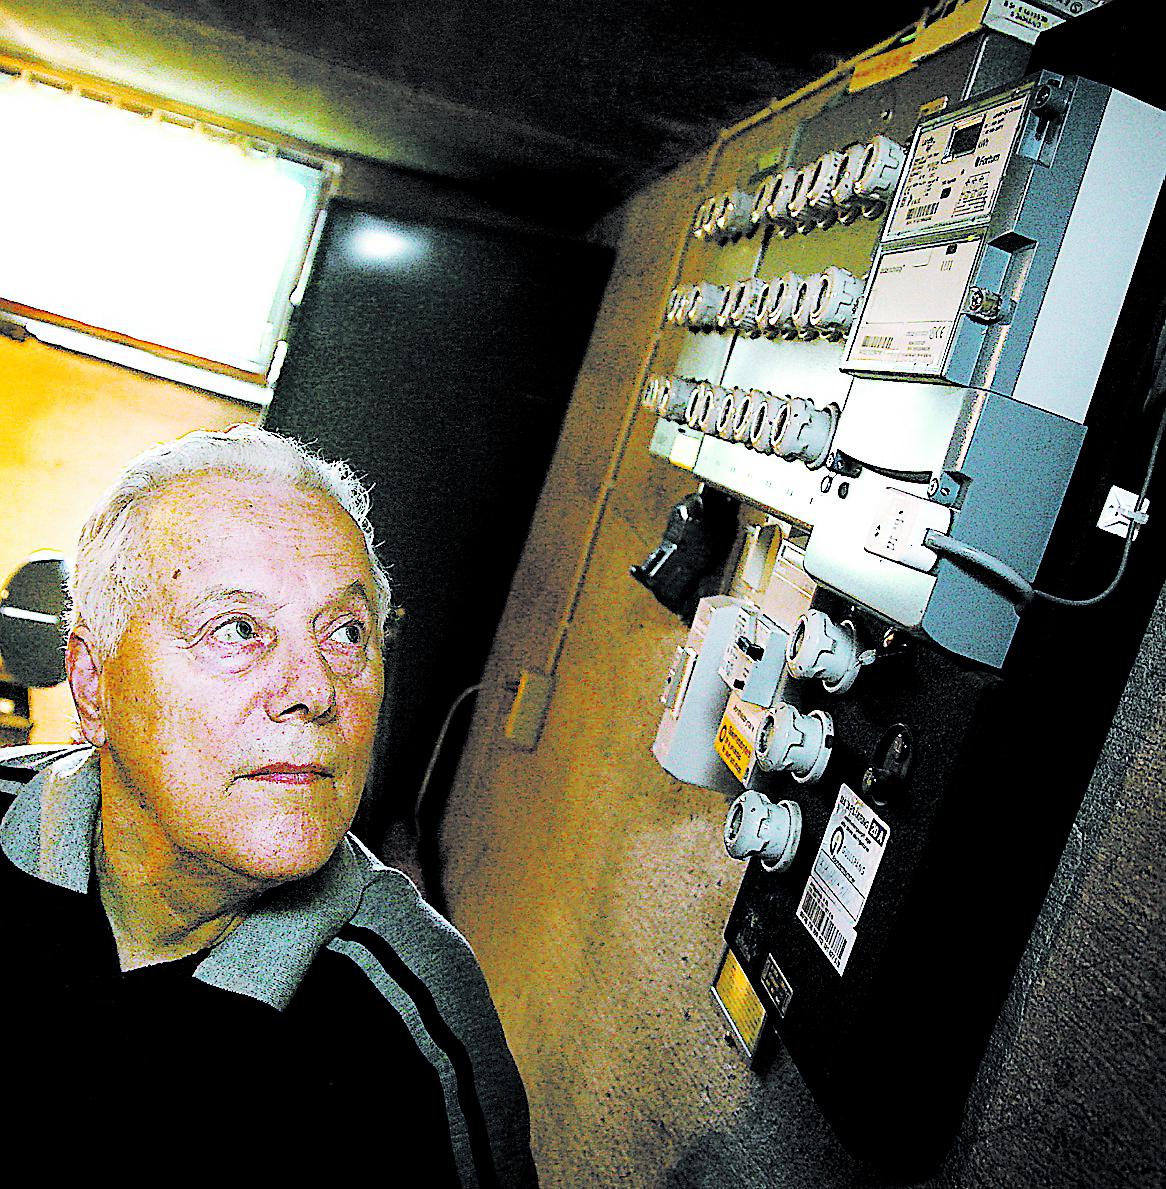 Nils Norling, 81, har antecknat sin förbrukning i tjugo år. När han fick en ny energibox blev räkningarna plötsligt mycket dyrare. ”Jag blir så arg när de ska fiffla”, säger han.